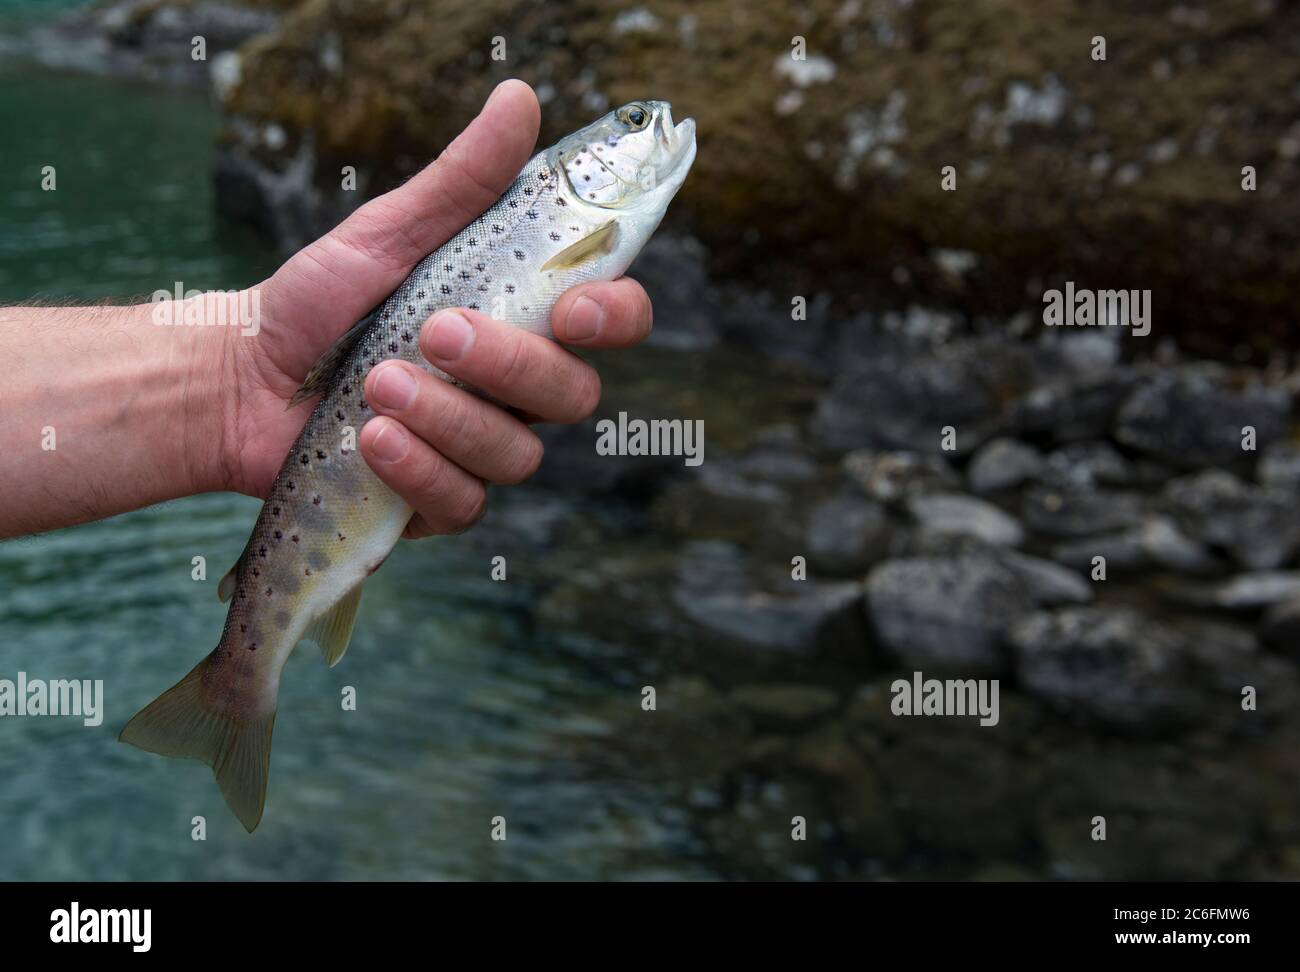 Frisch gefangener kleiner Regenbogenforellenfisch in der Hand eines Fischers. Vor dem Loslassen Norwegen Stockfoto